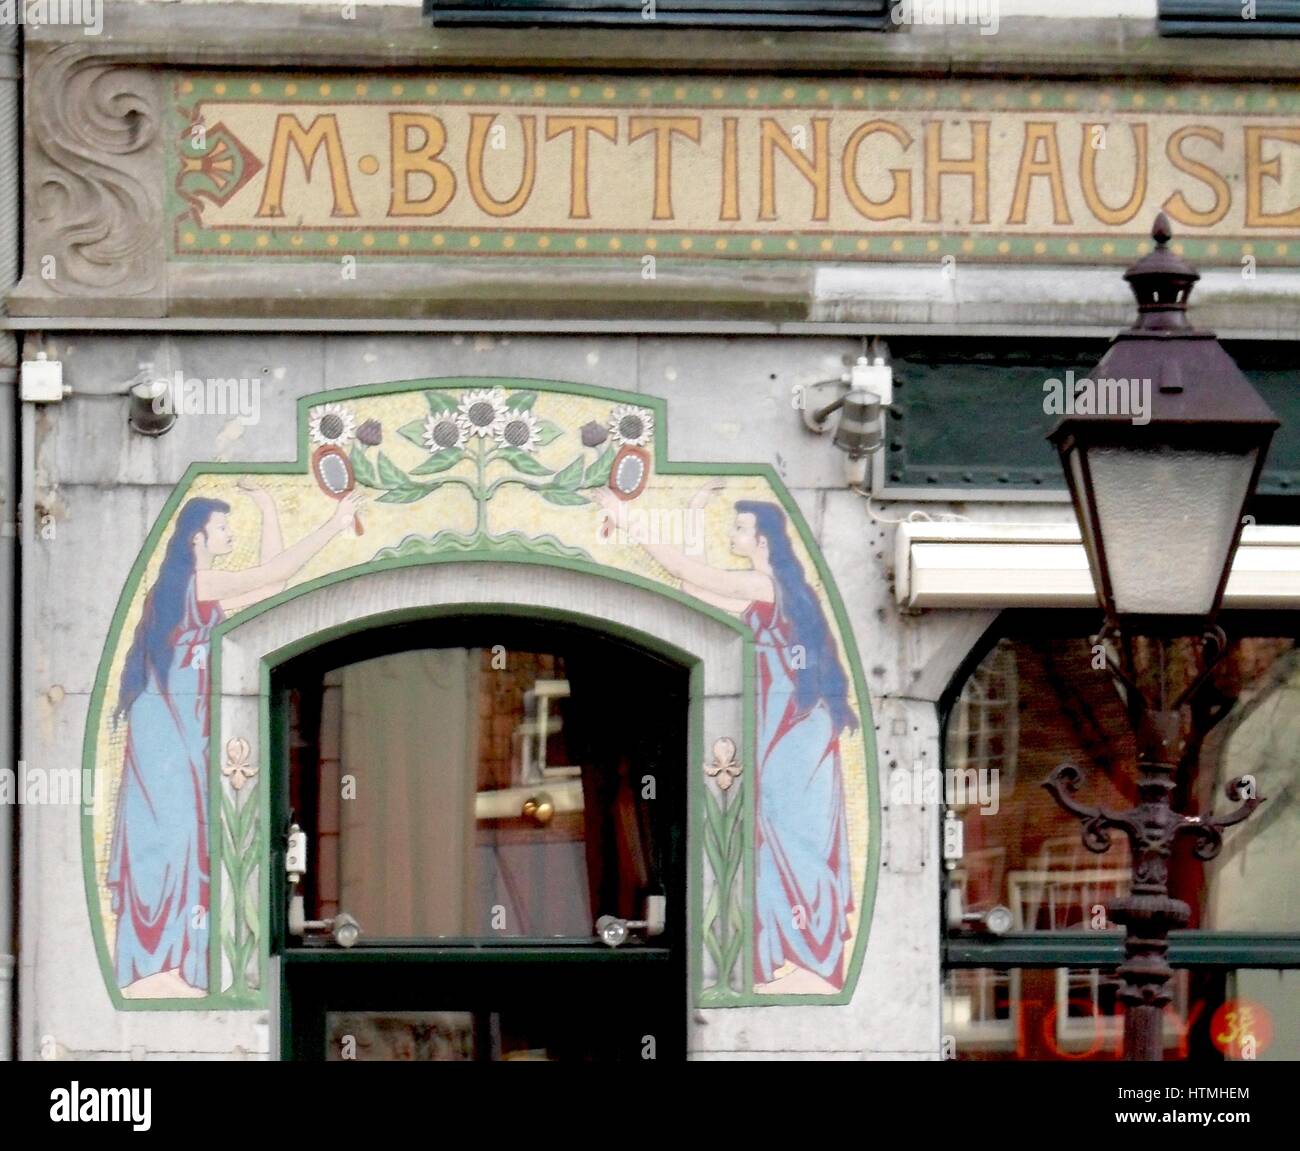 Détail d'une frise décorative art nouveau entourant la porte d'une boutique à Amsterdam. De style hollandais vers 1905 Banque D'Images